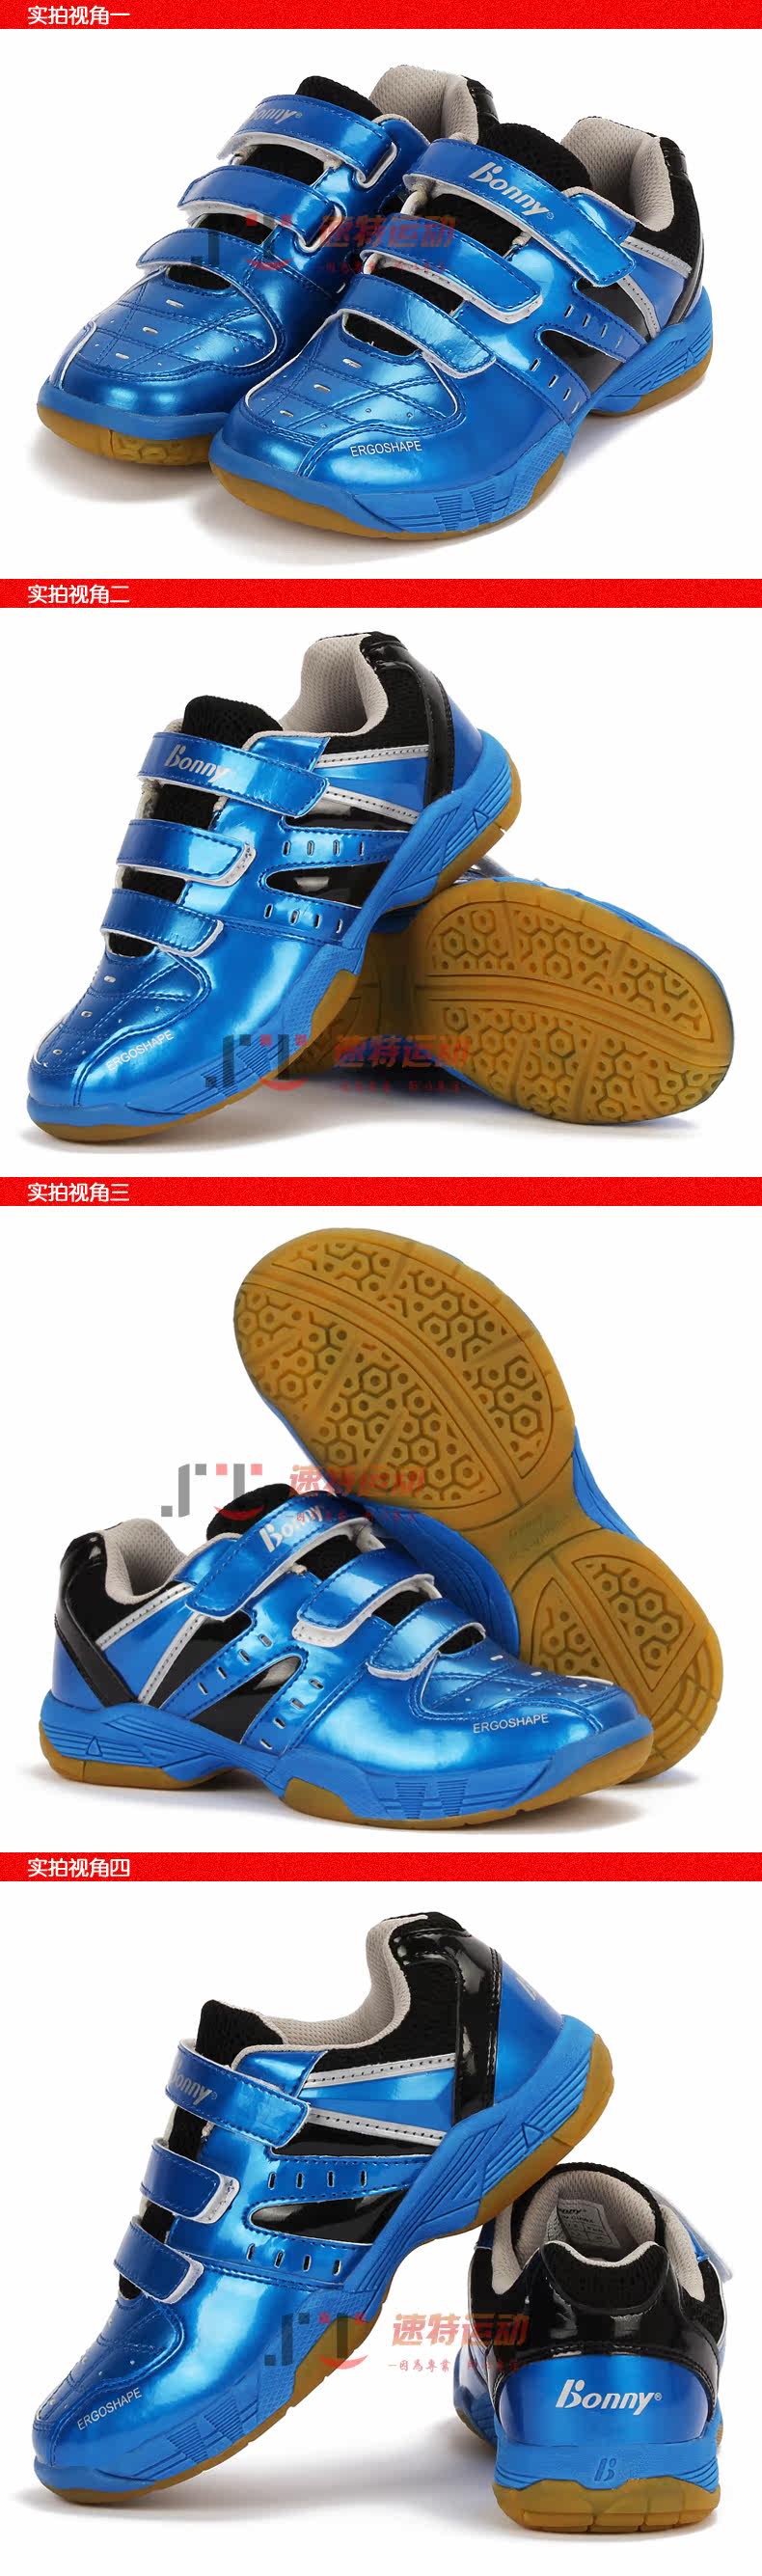 Chaussures de Badminton enfant BONNY 1FWB14020 - Ref 843359 Image 18